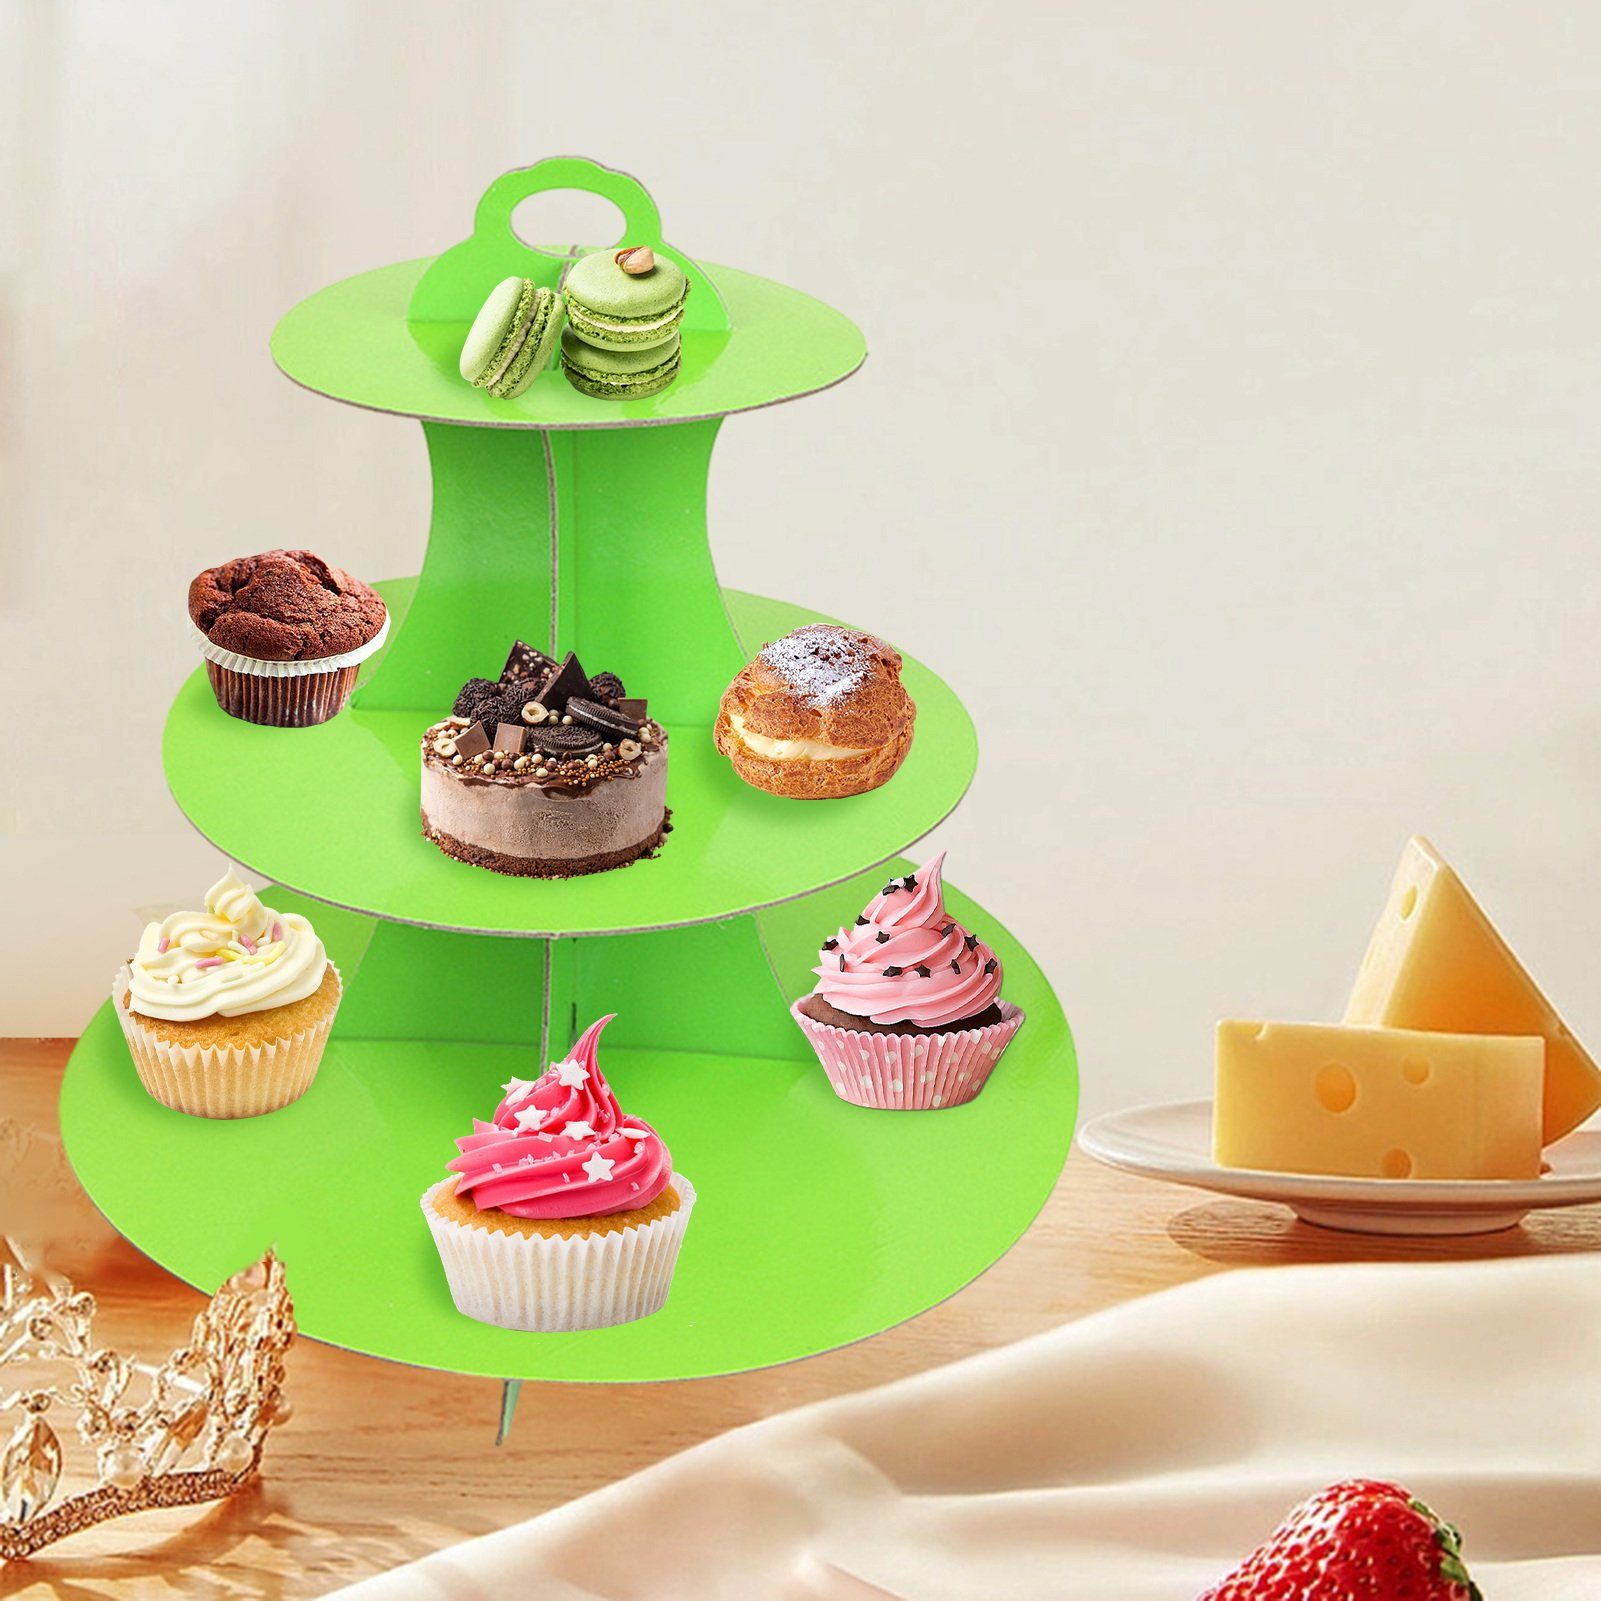 Rutaqian Kuchenteller Tortenständer Etagen Dessertteller mit Geburtstagsfeier Haushaltsprodukte Cupcake-Tablett drei Grün St), Kuchenstand, (1